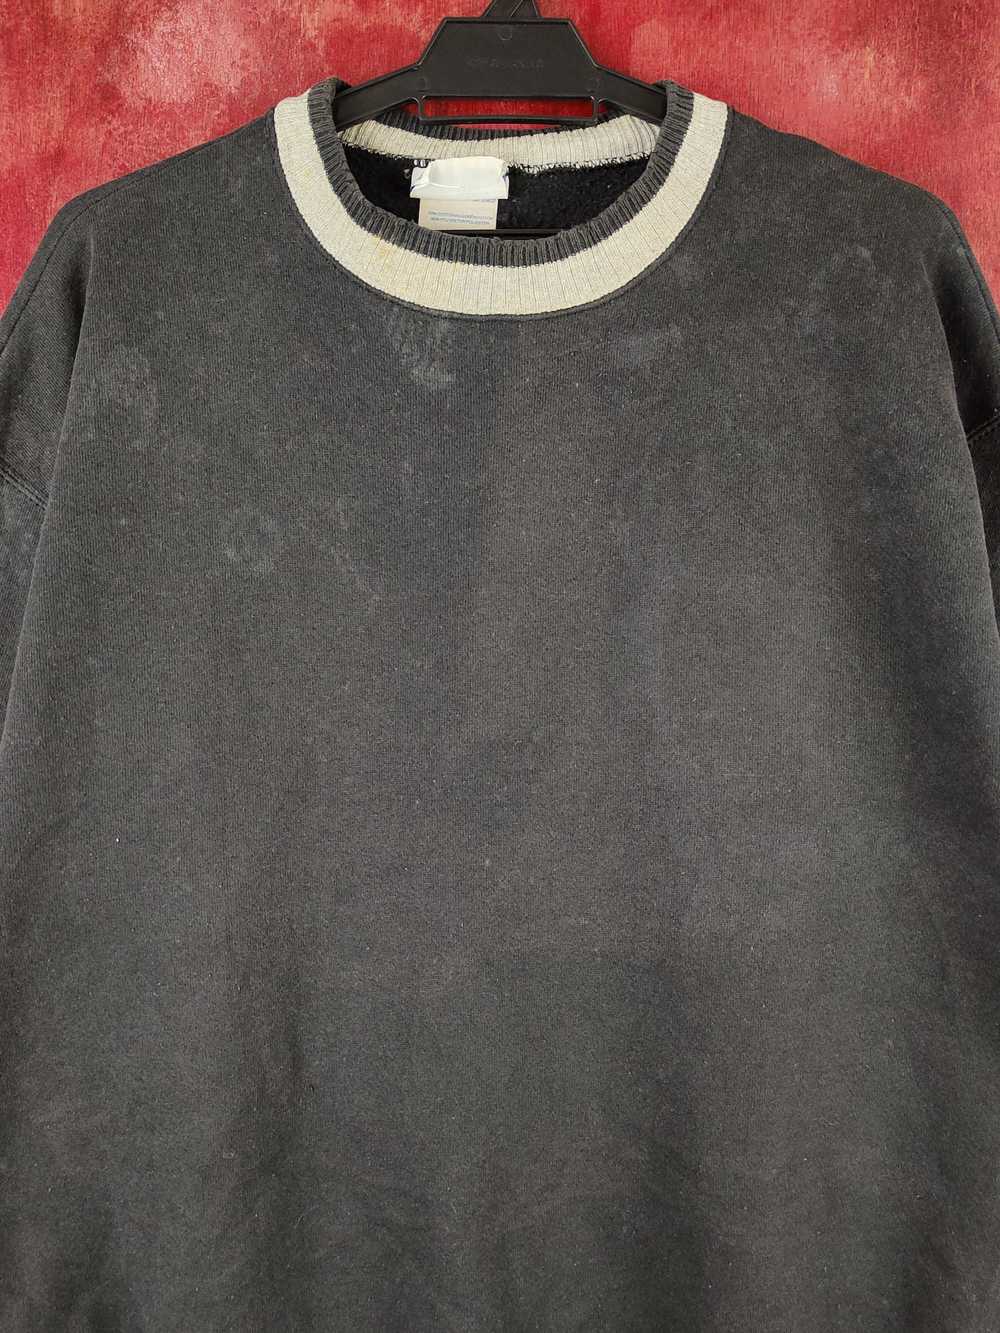 Streetwear × Vintage Discus Black Faded Sweatshir… - image 2